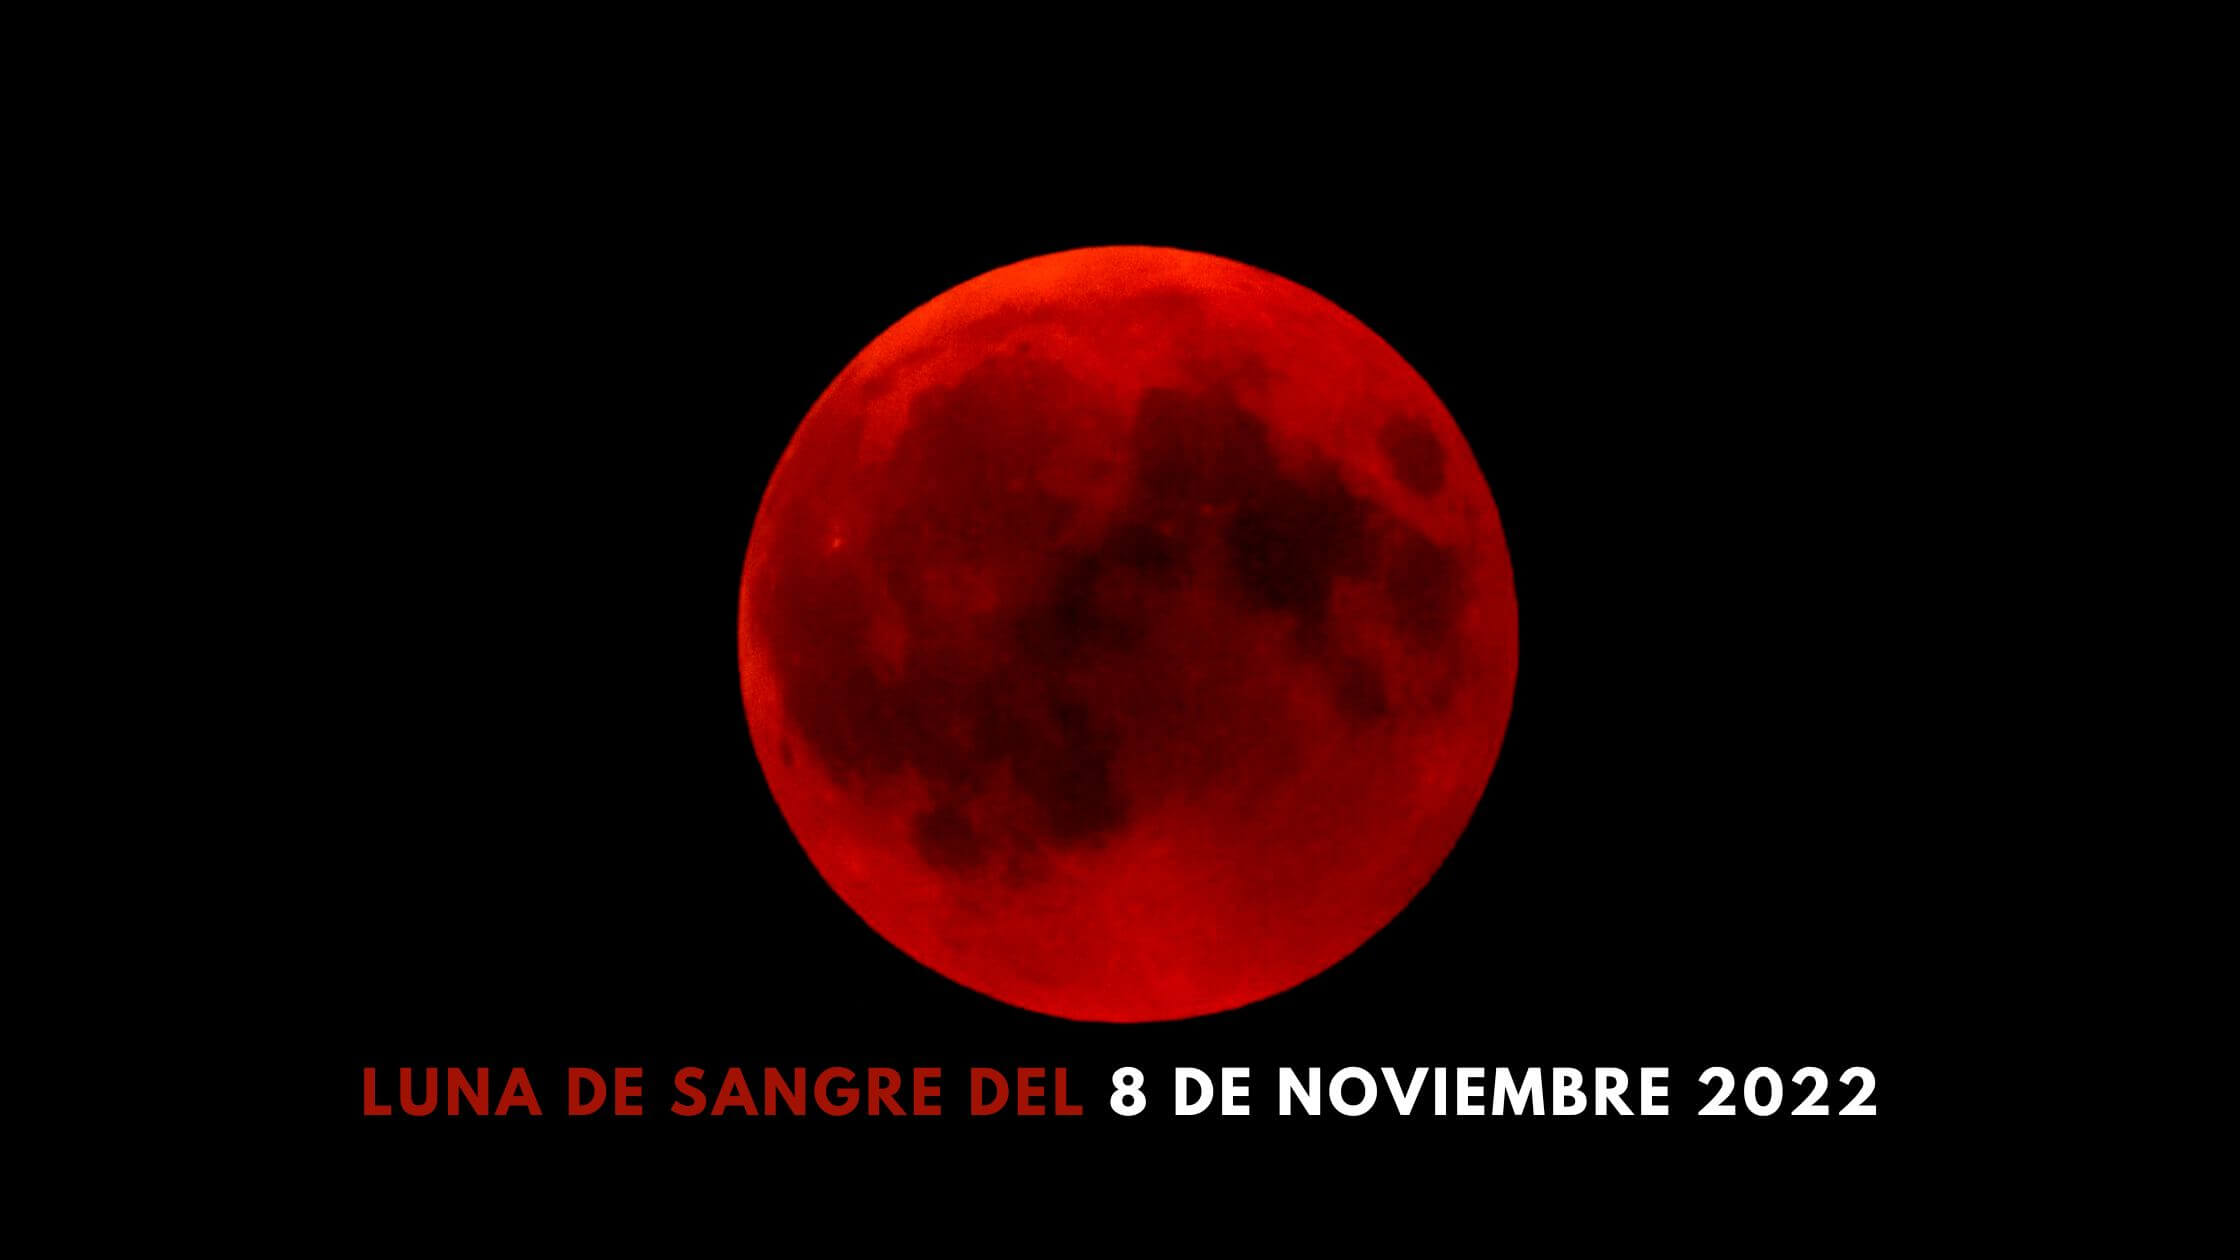 Luna de sangre del 8 de noviembre: vea el eclipse lunar total en directo